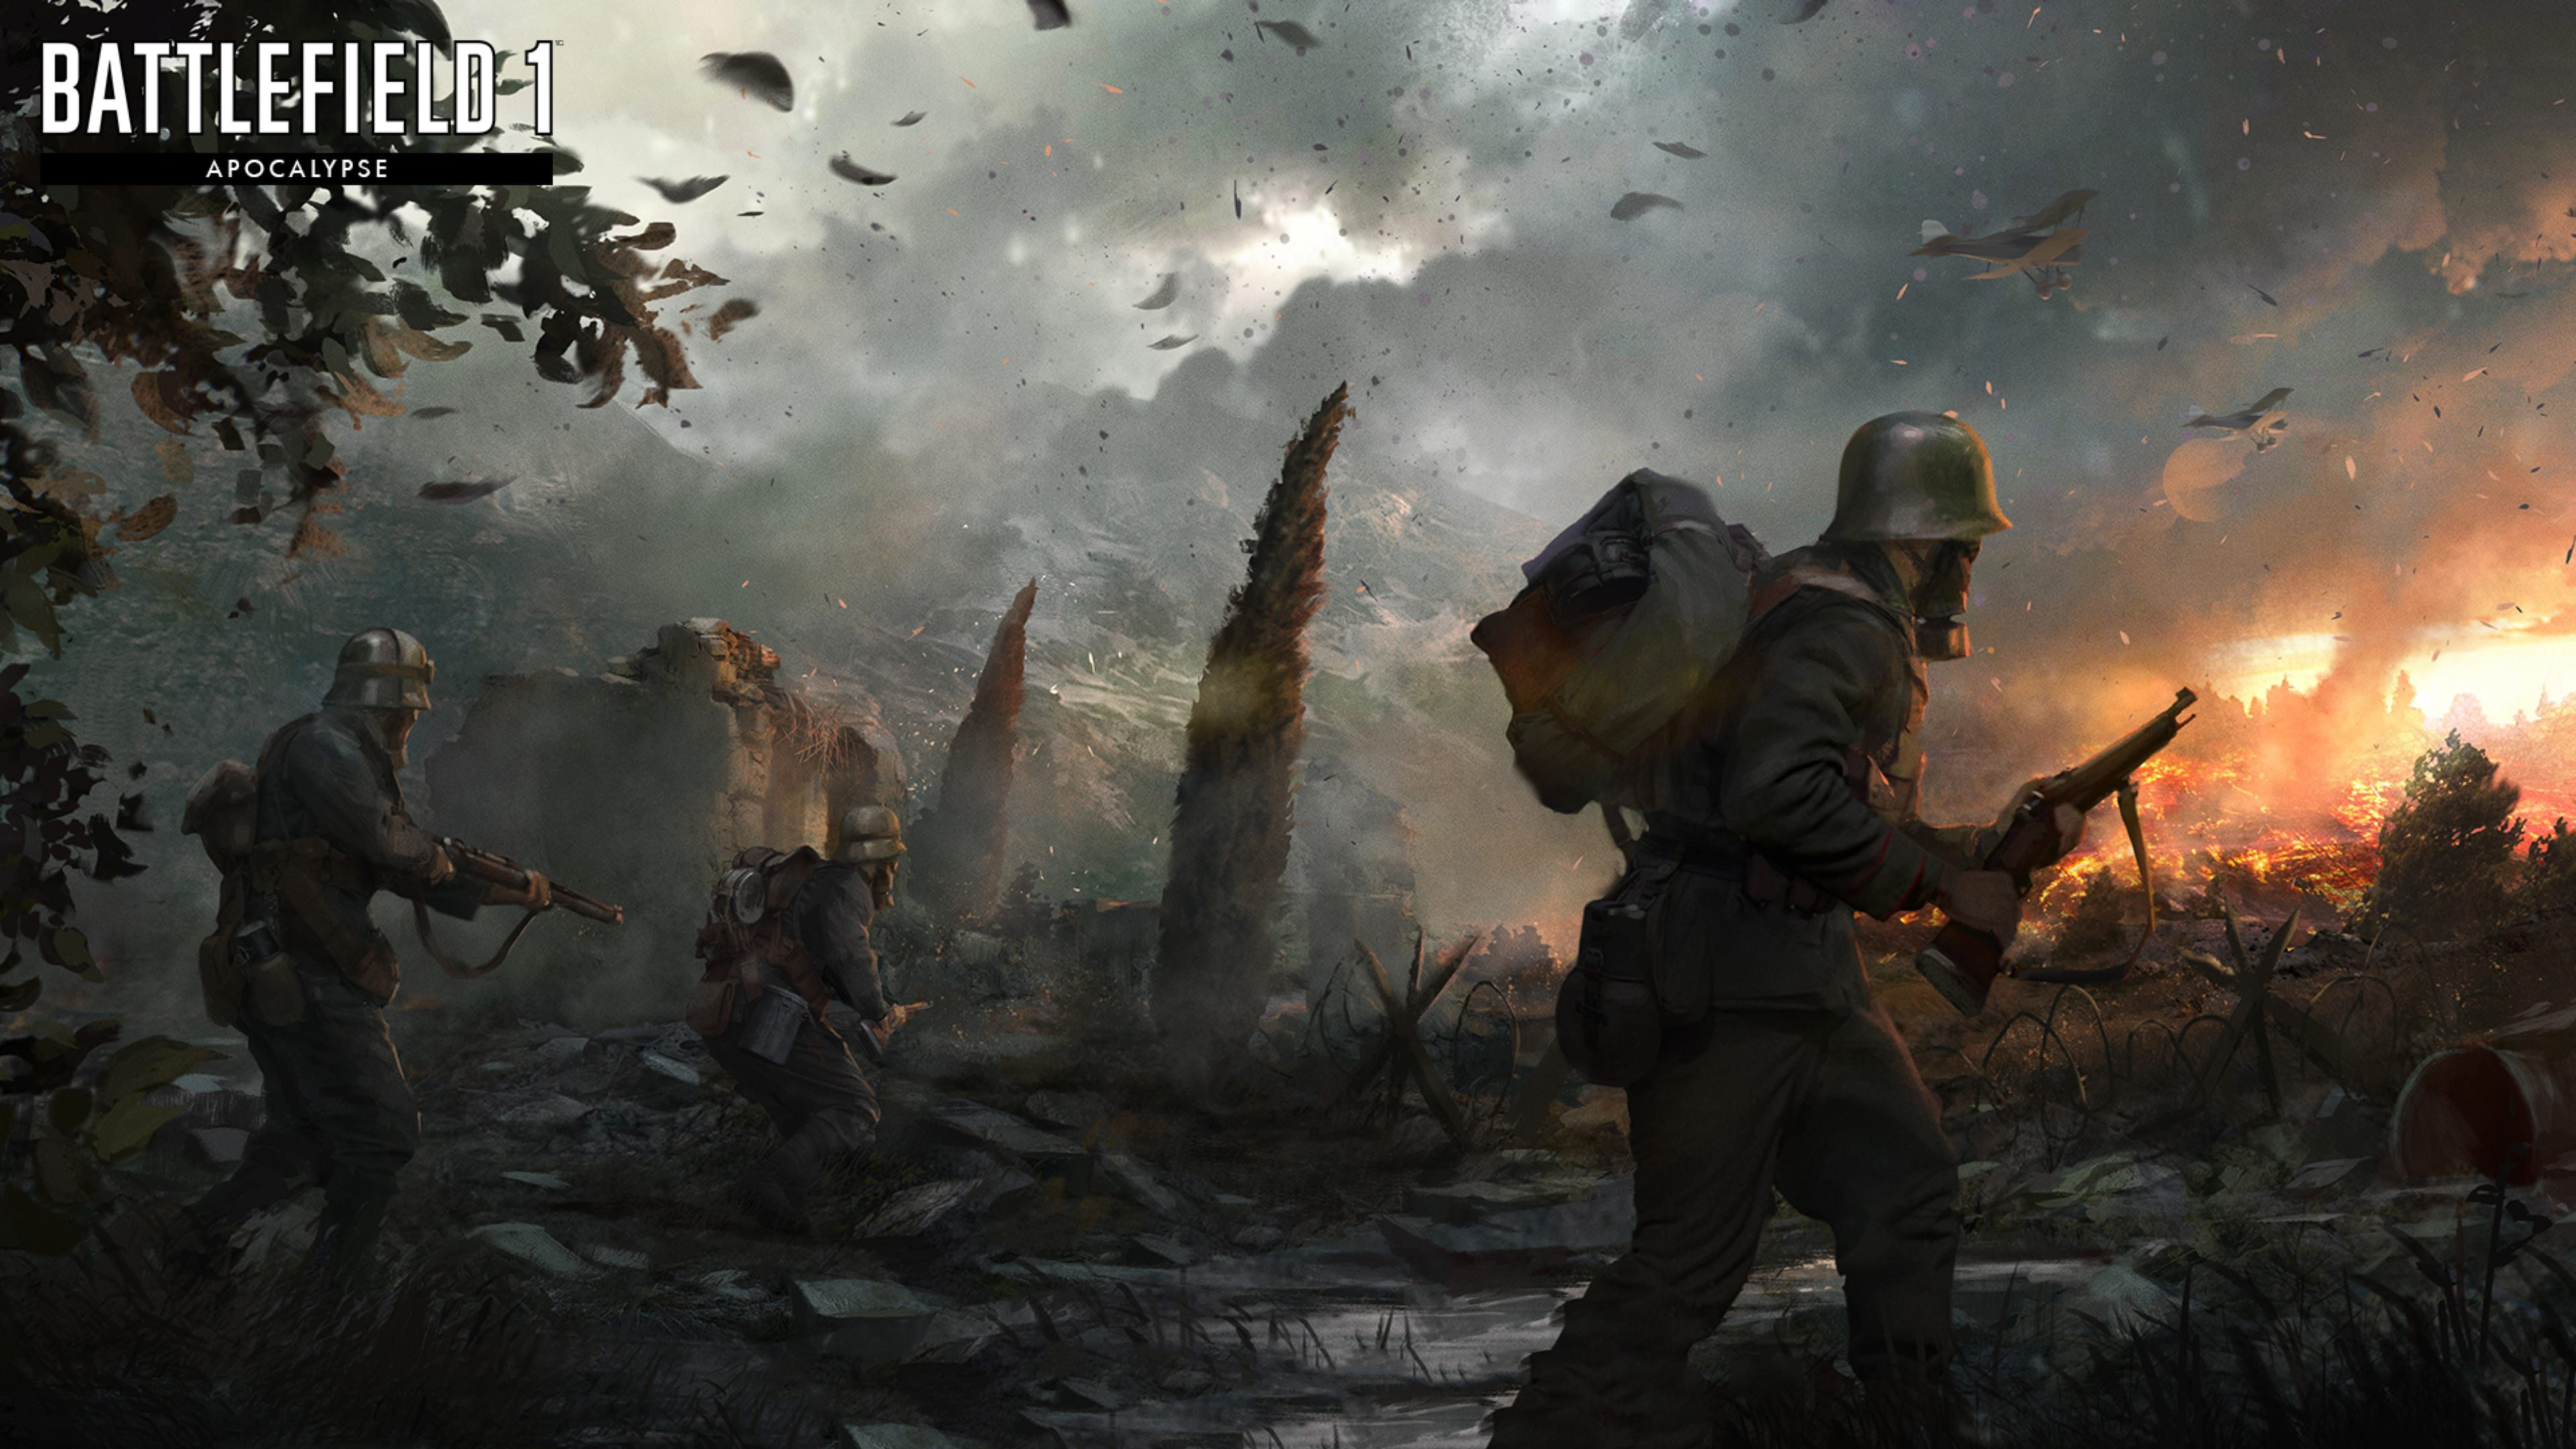 Battlefield 1 Apocalypse 4k, HD Games, 4k Wallpapers, Images